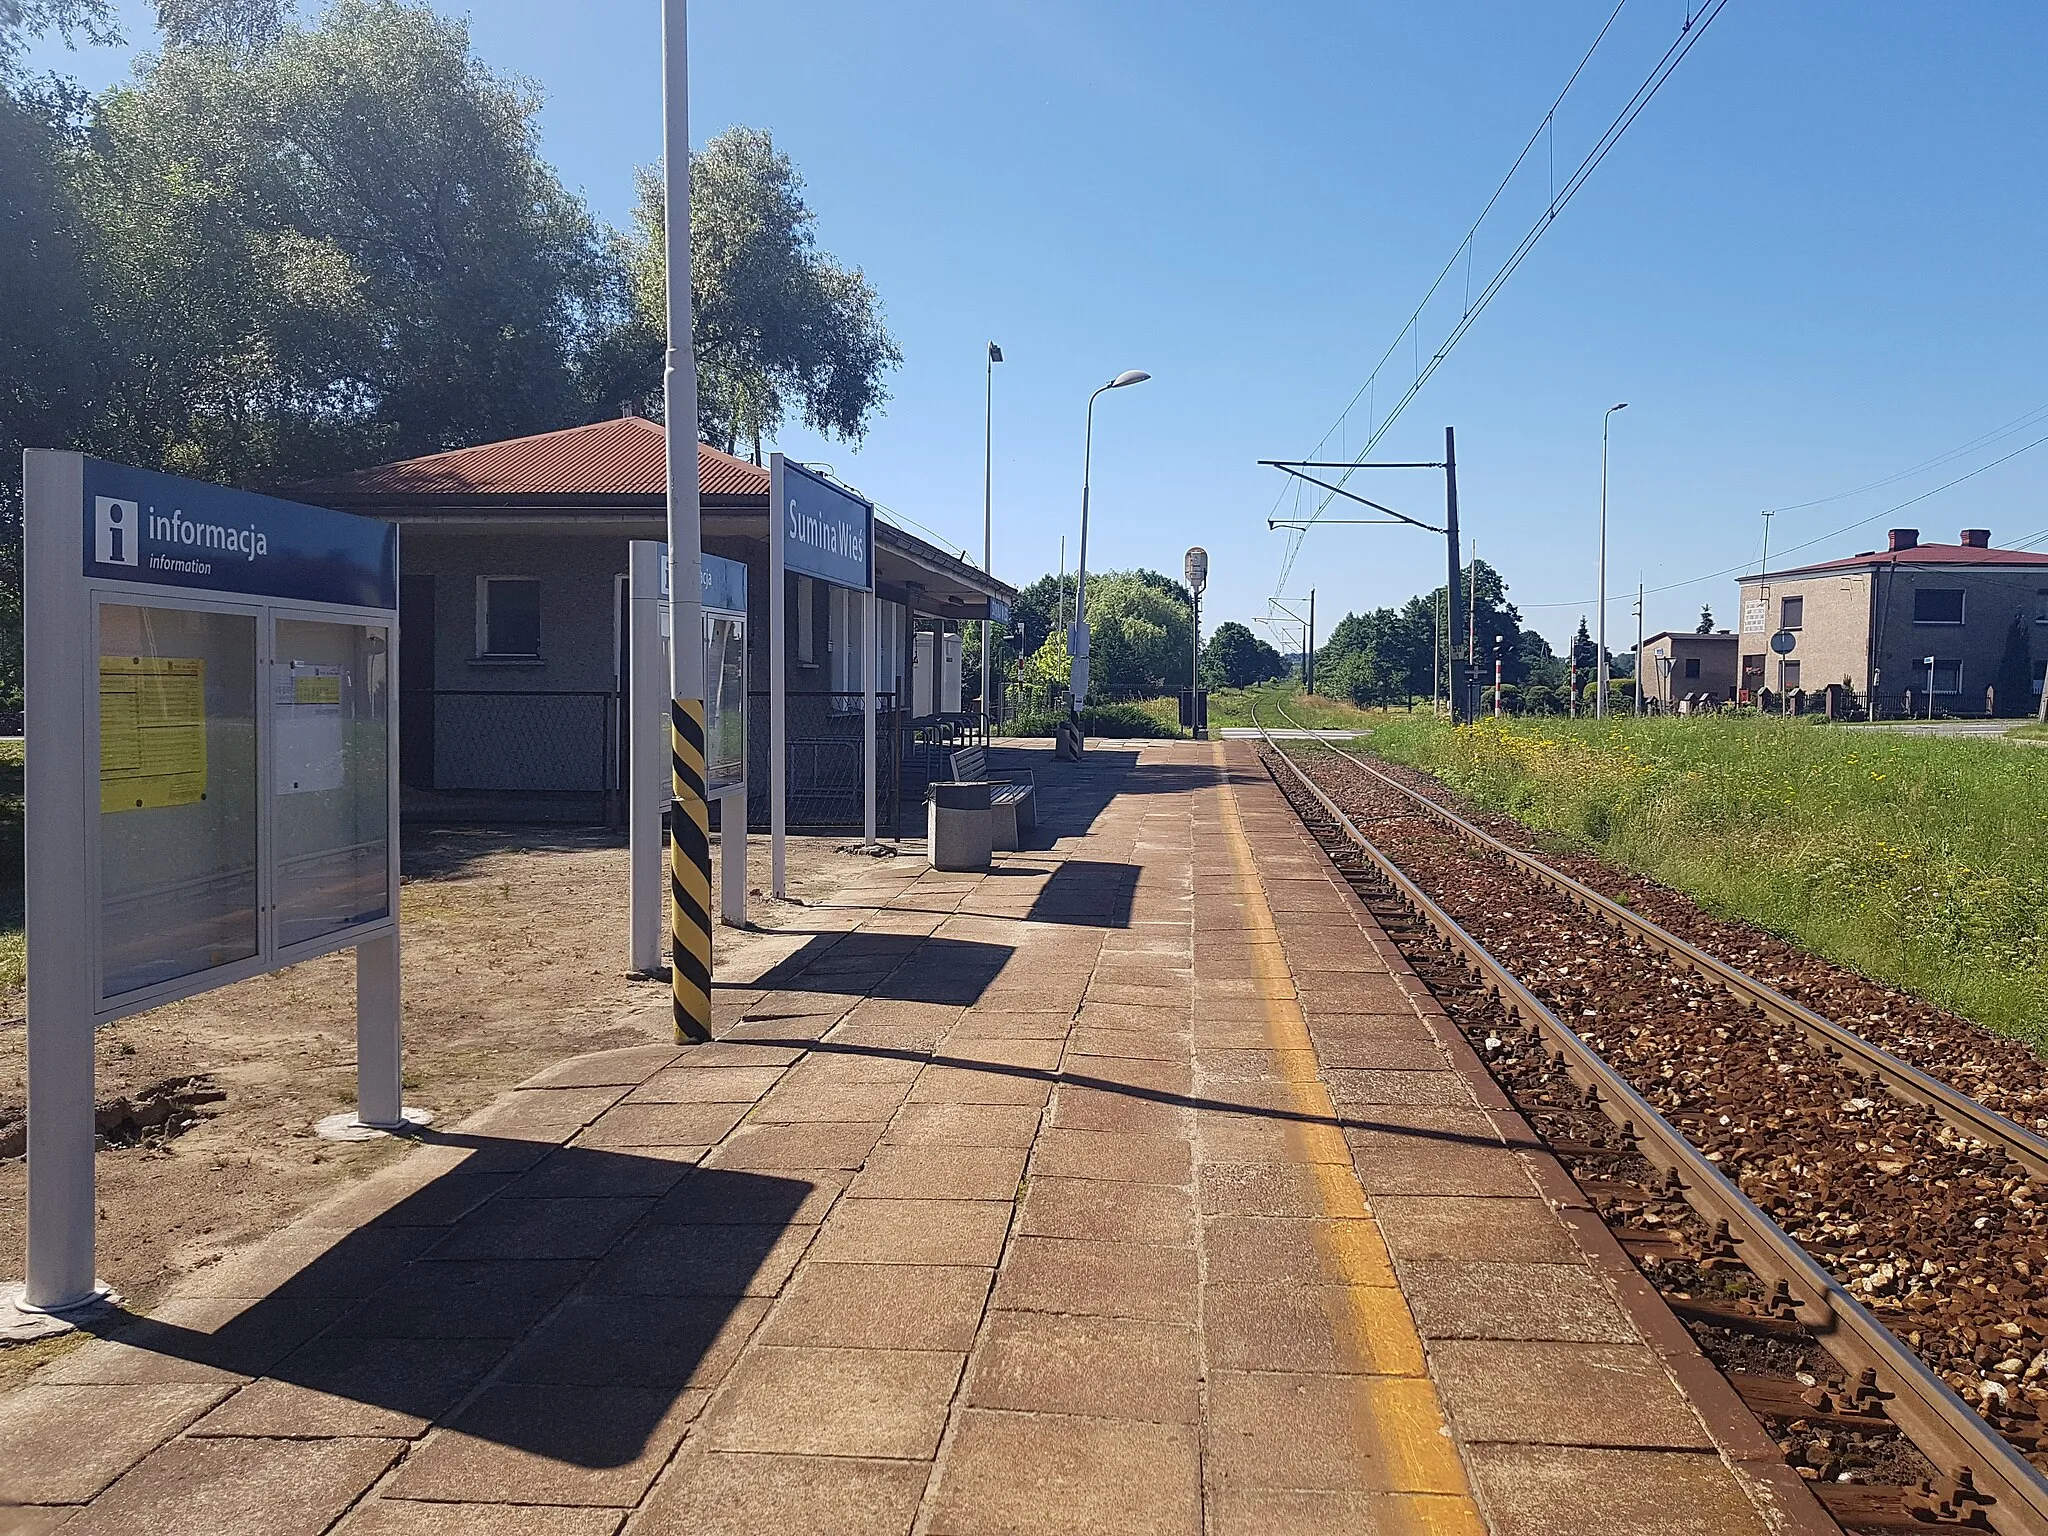 Photo showing: Sumina Wieś train stop